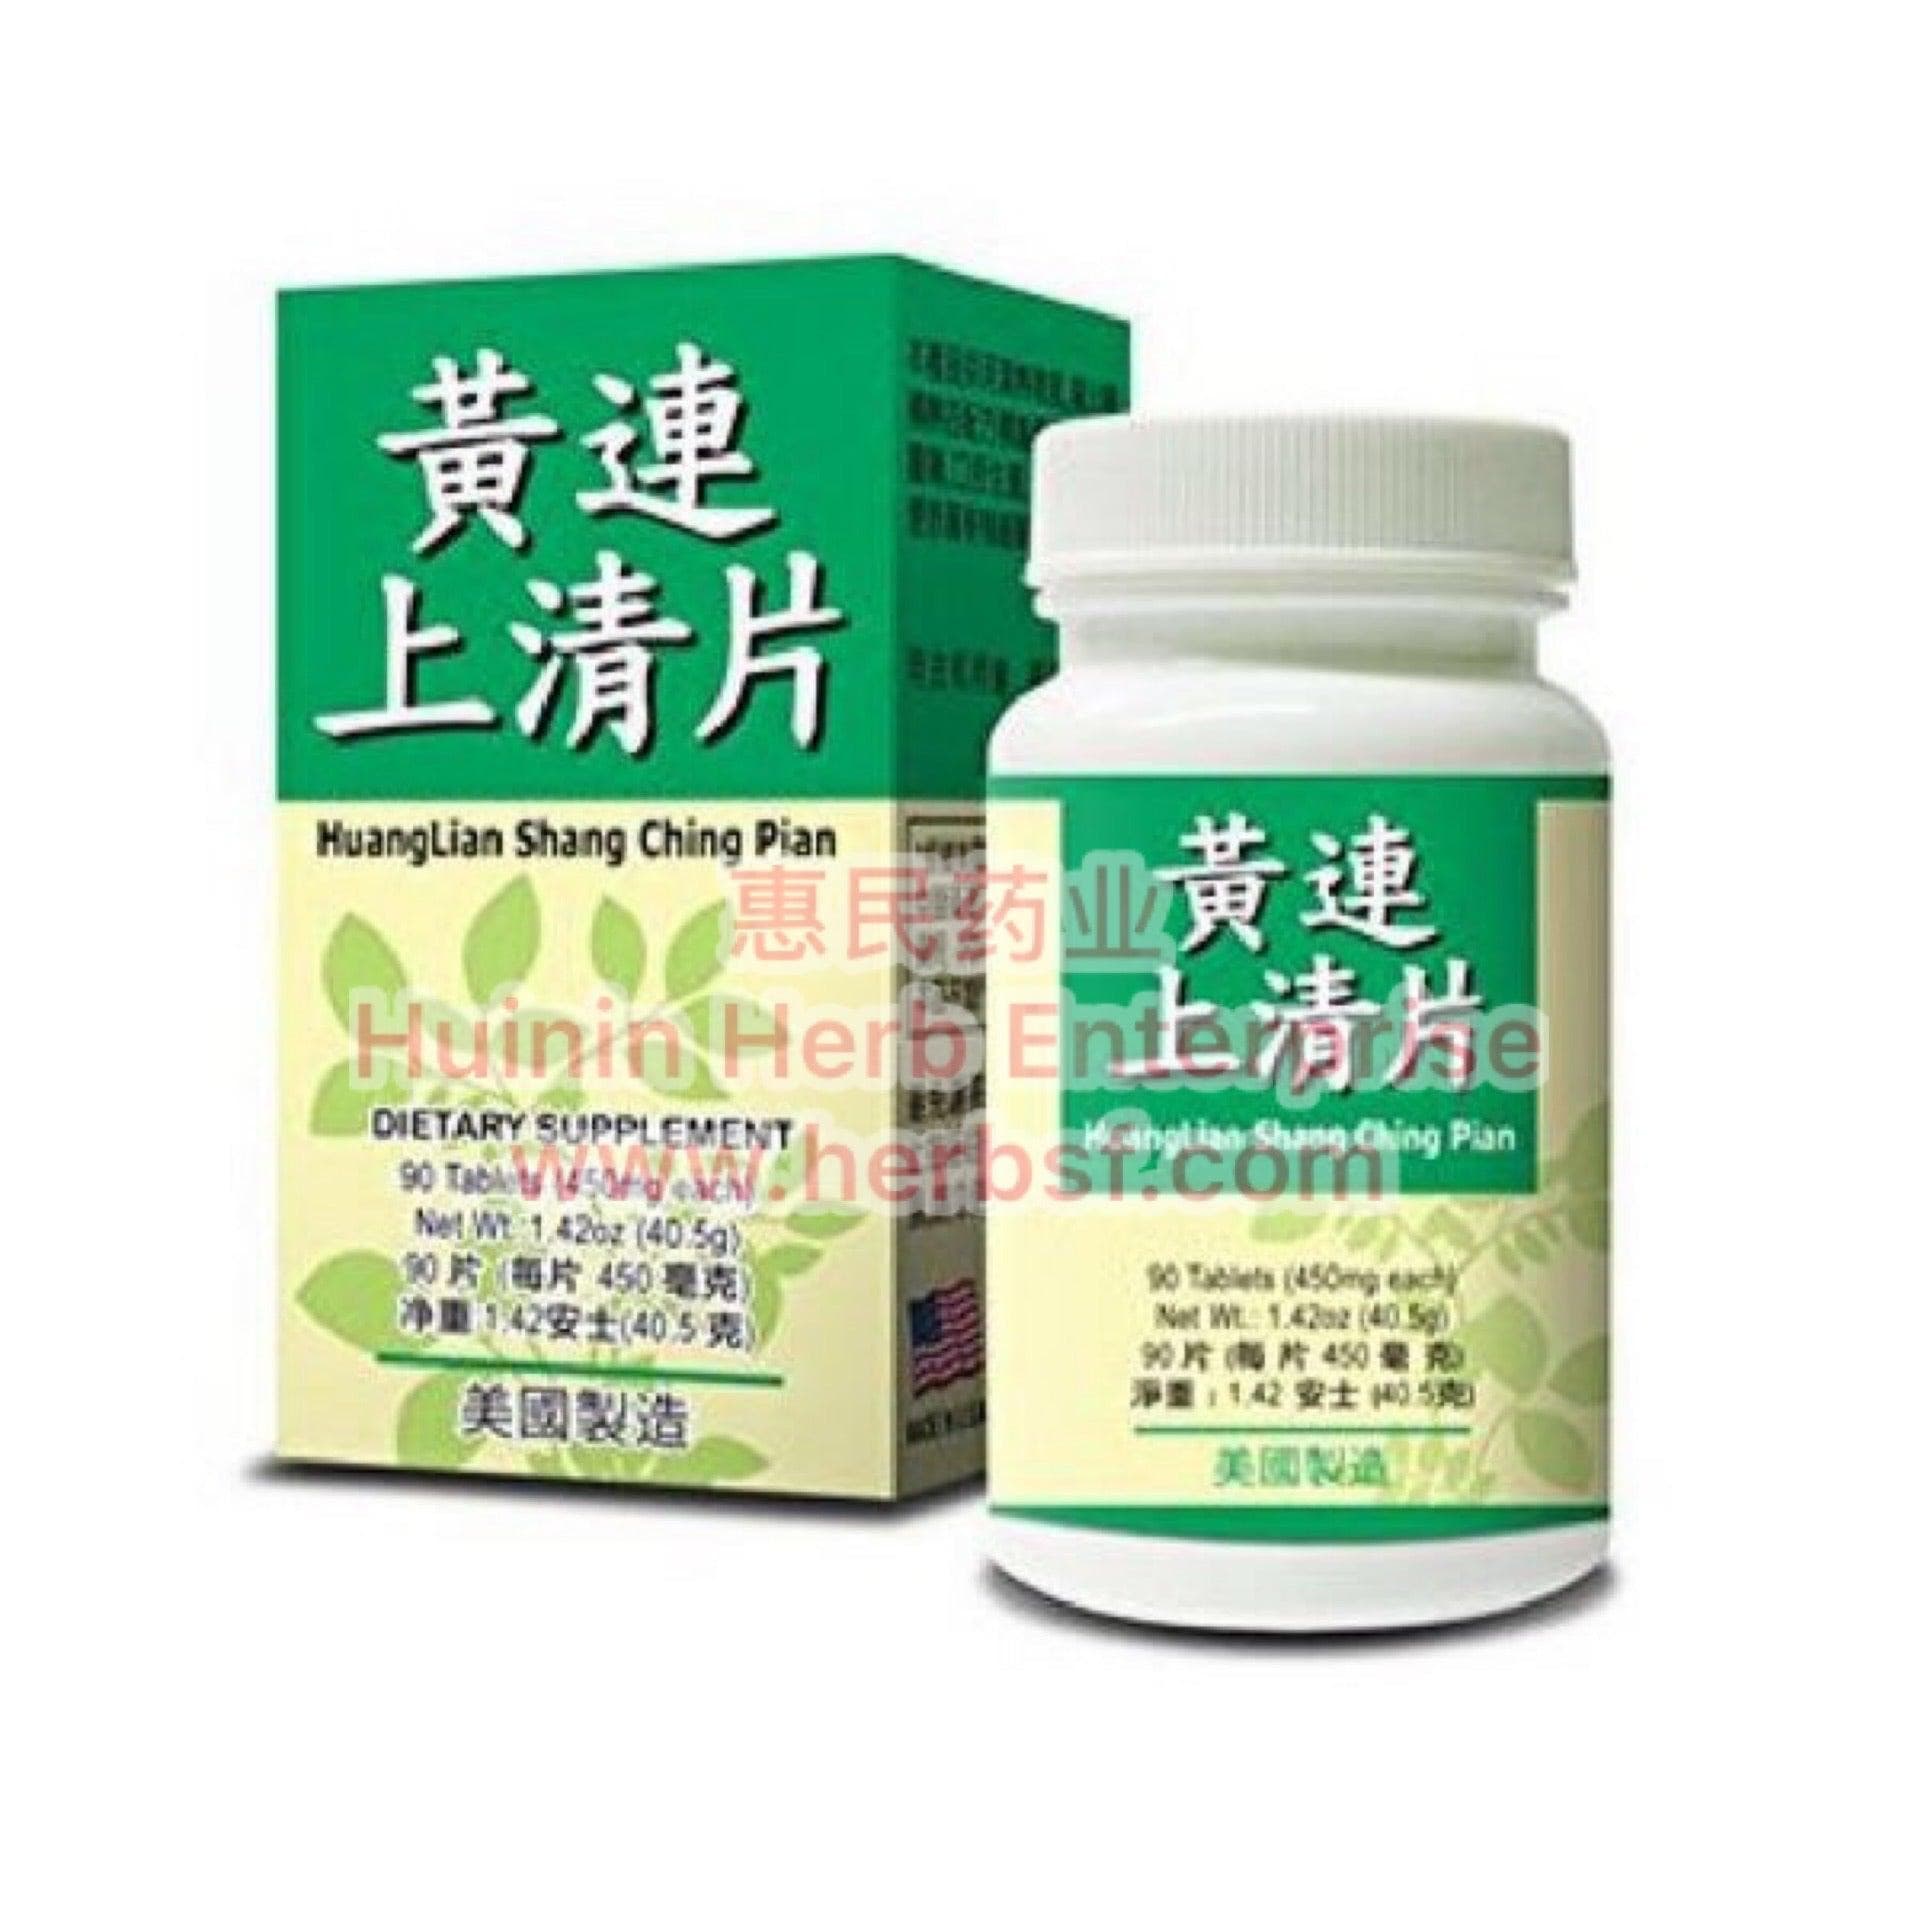 Huang Lian Shang Ching Pian - Huimin Herb Online, LLC